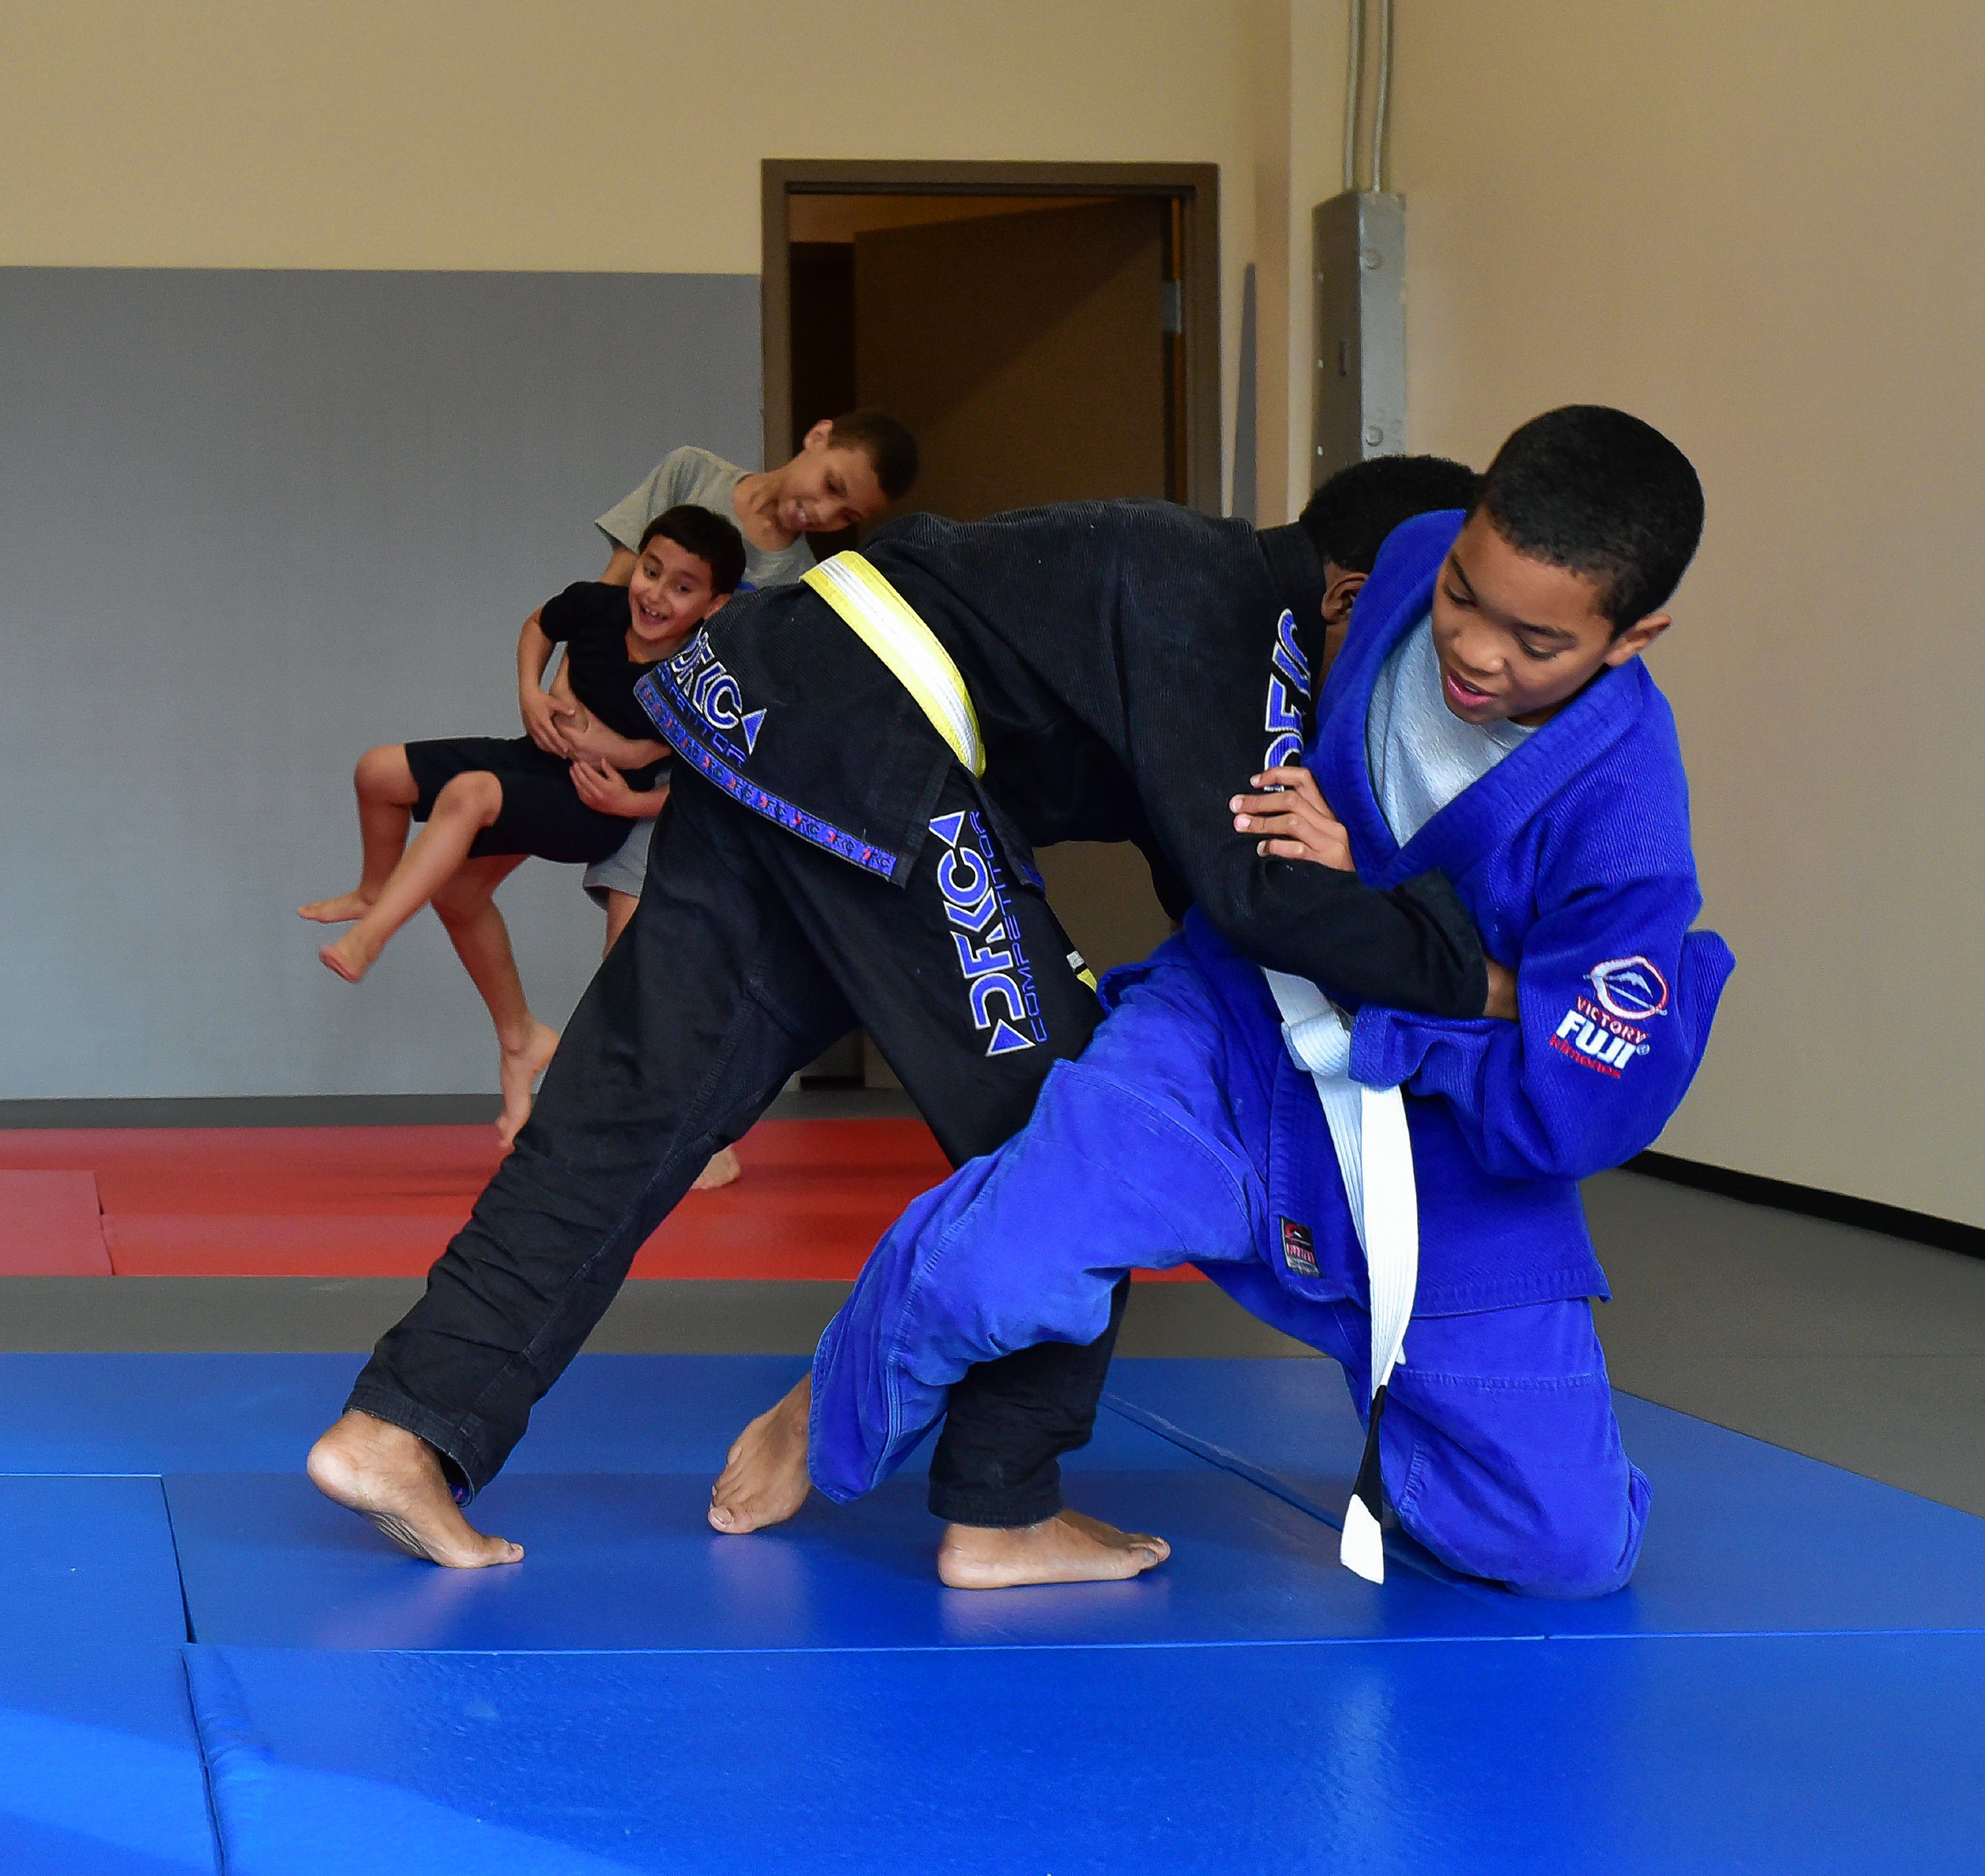 Scene Here: Junior Jiu Jitsu / Warriors in Training